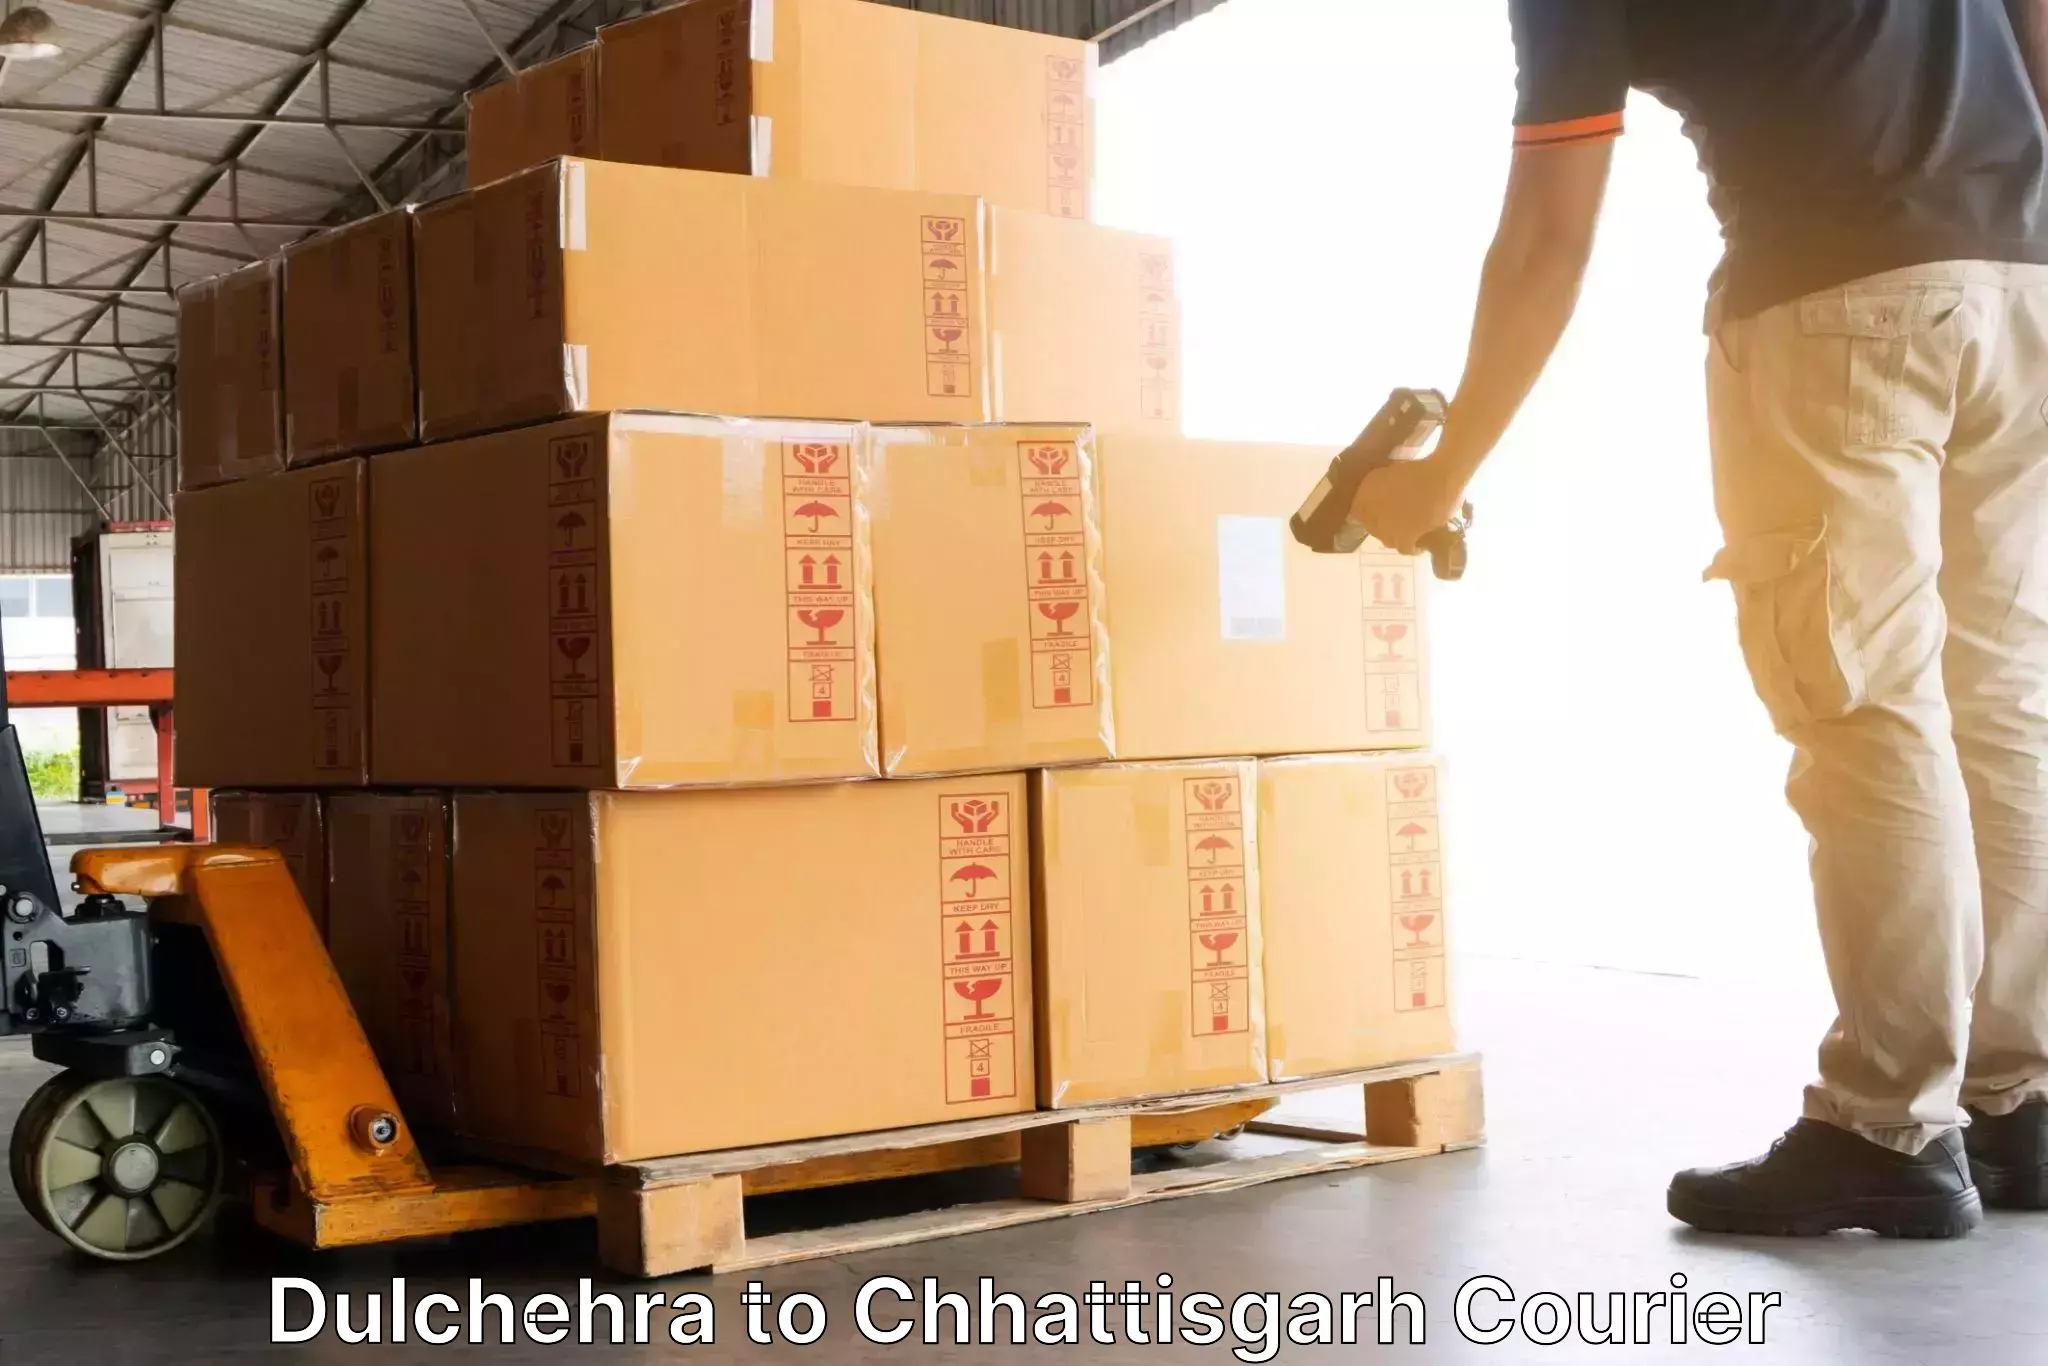 Urgent courier needs Dulchehra to Raipur